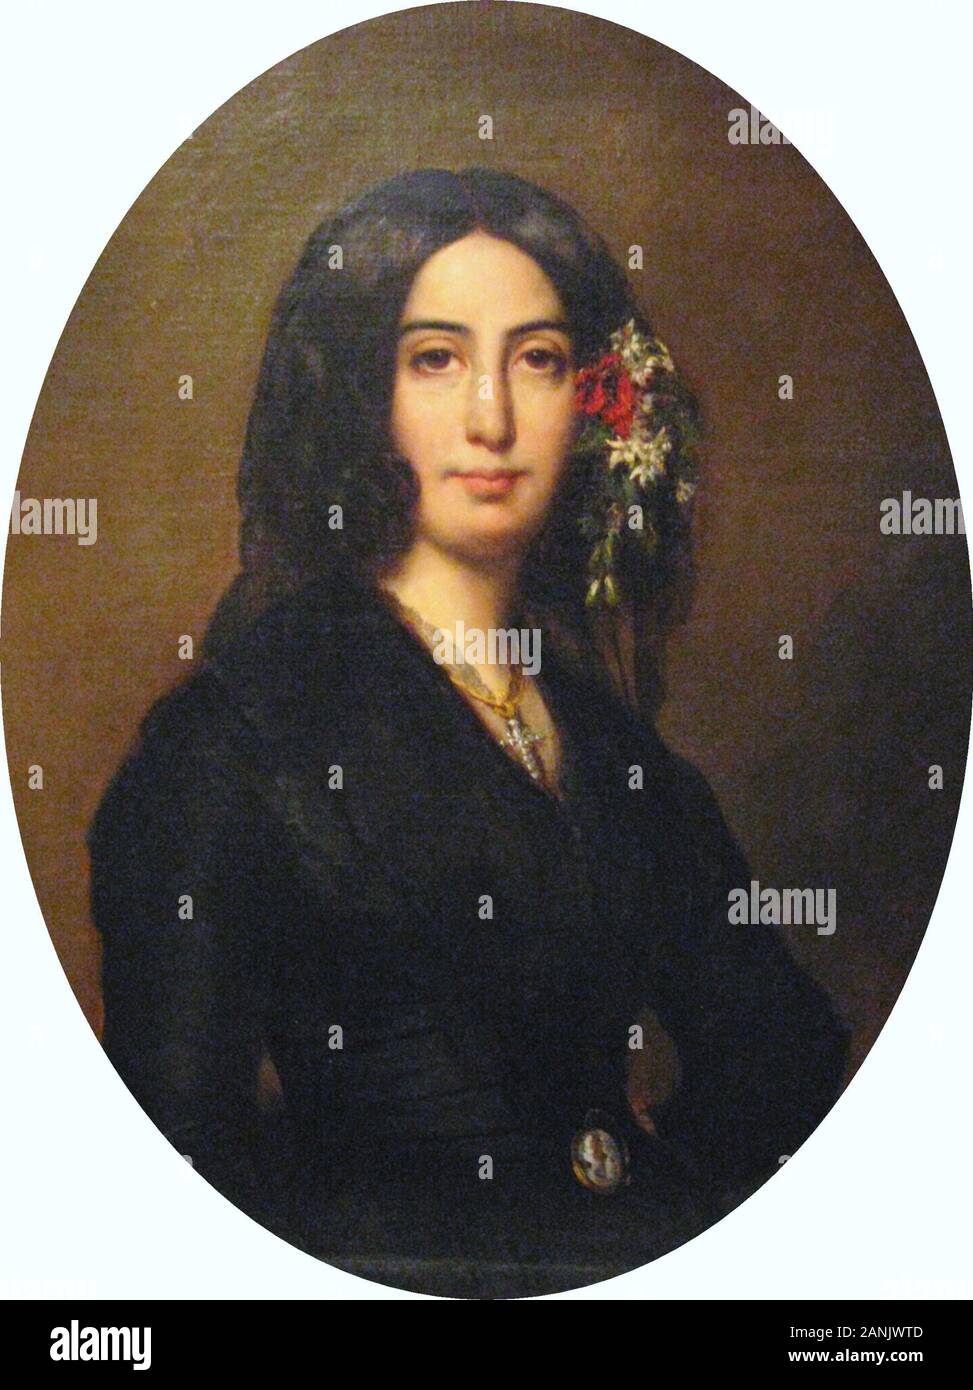 GEORGE SAND - Amantine Dupin - romancier français (1804-1876), peint par Charpentier en 1838 Août Banque D'Images